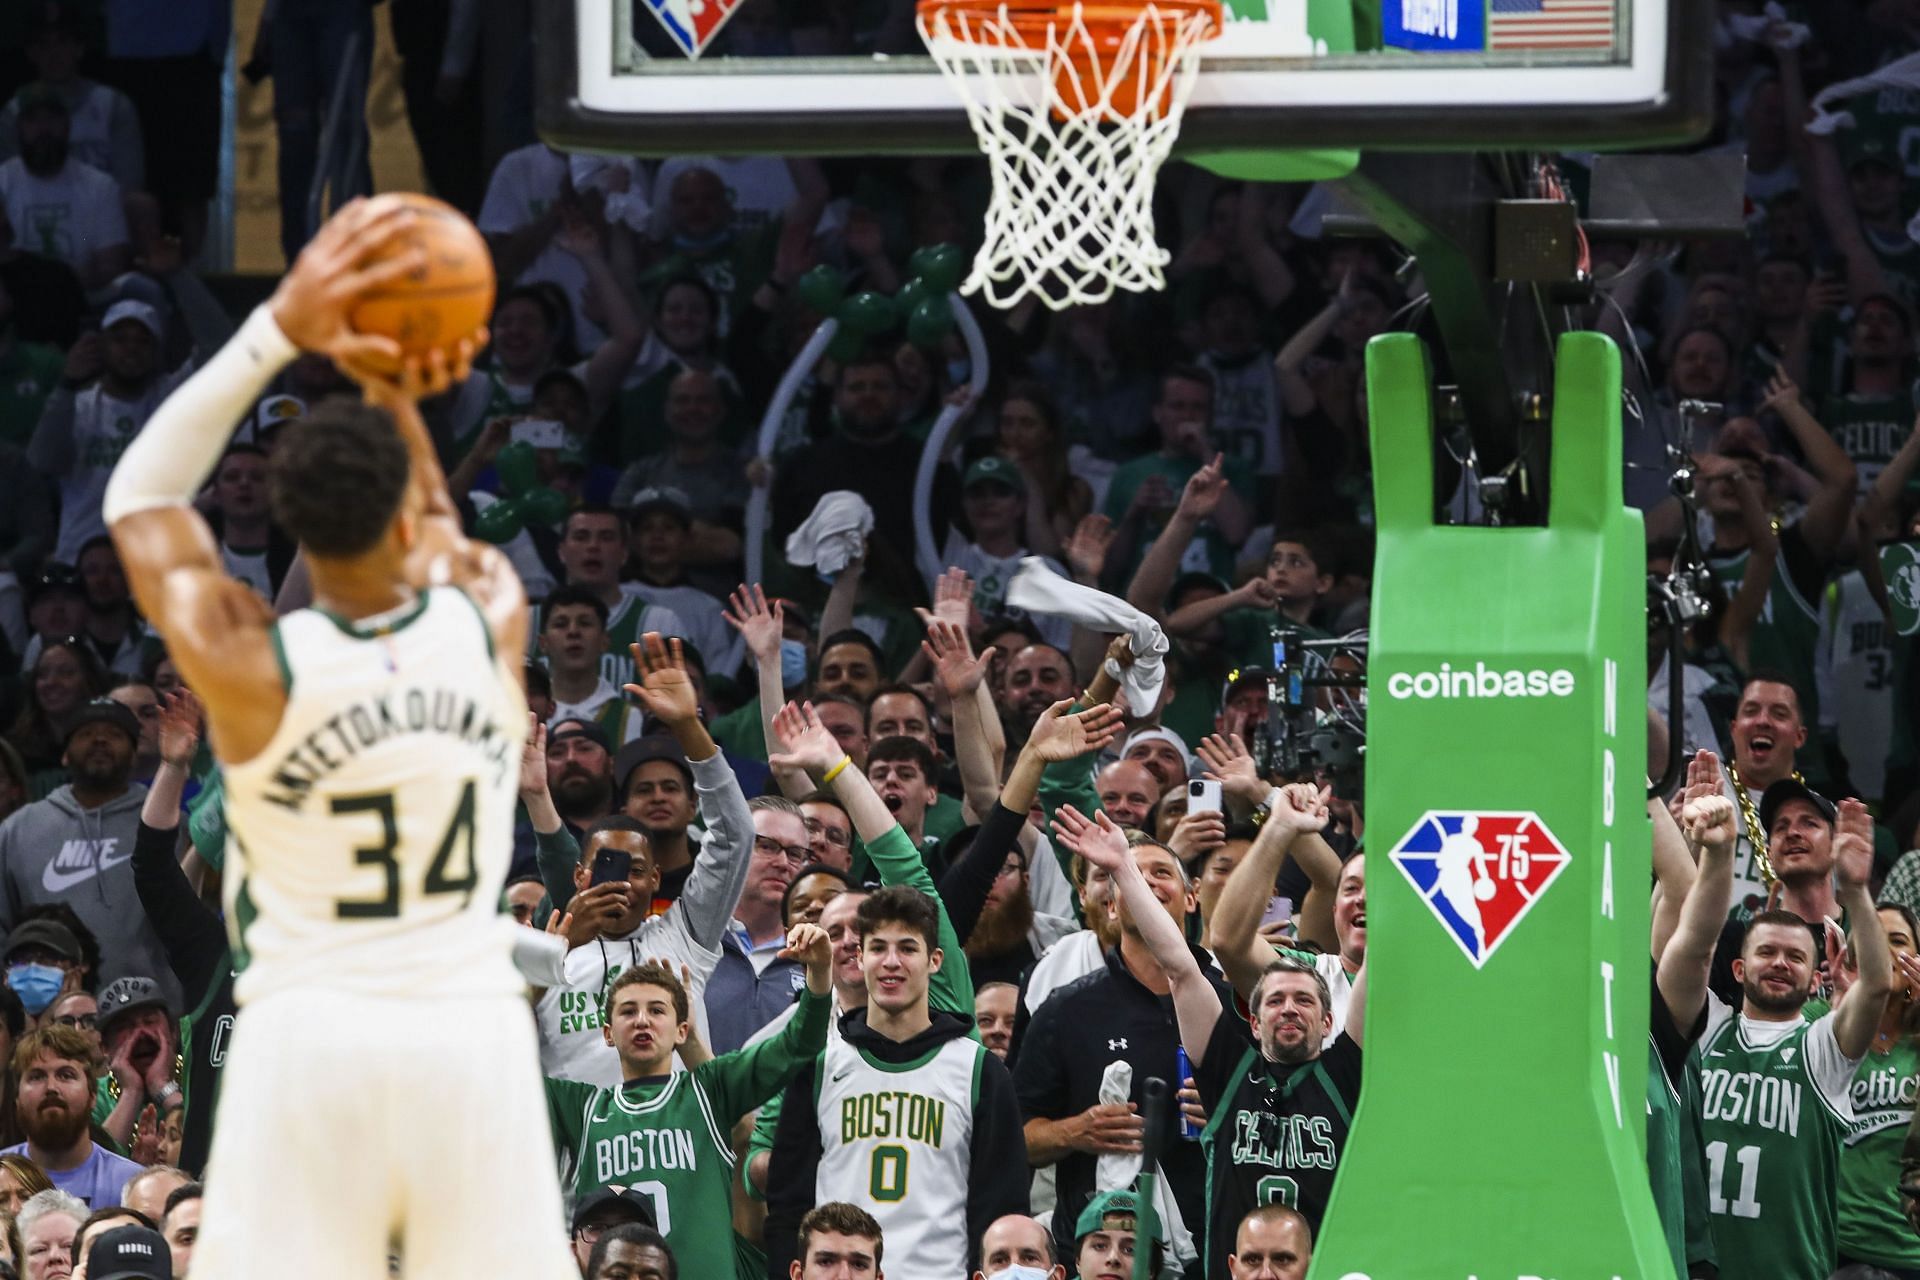 Boston Celtics fans try to distract Giannis Antetokounmpo of the Milwaukee Bucks